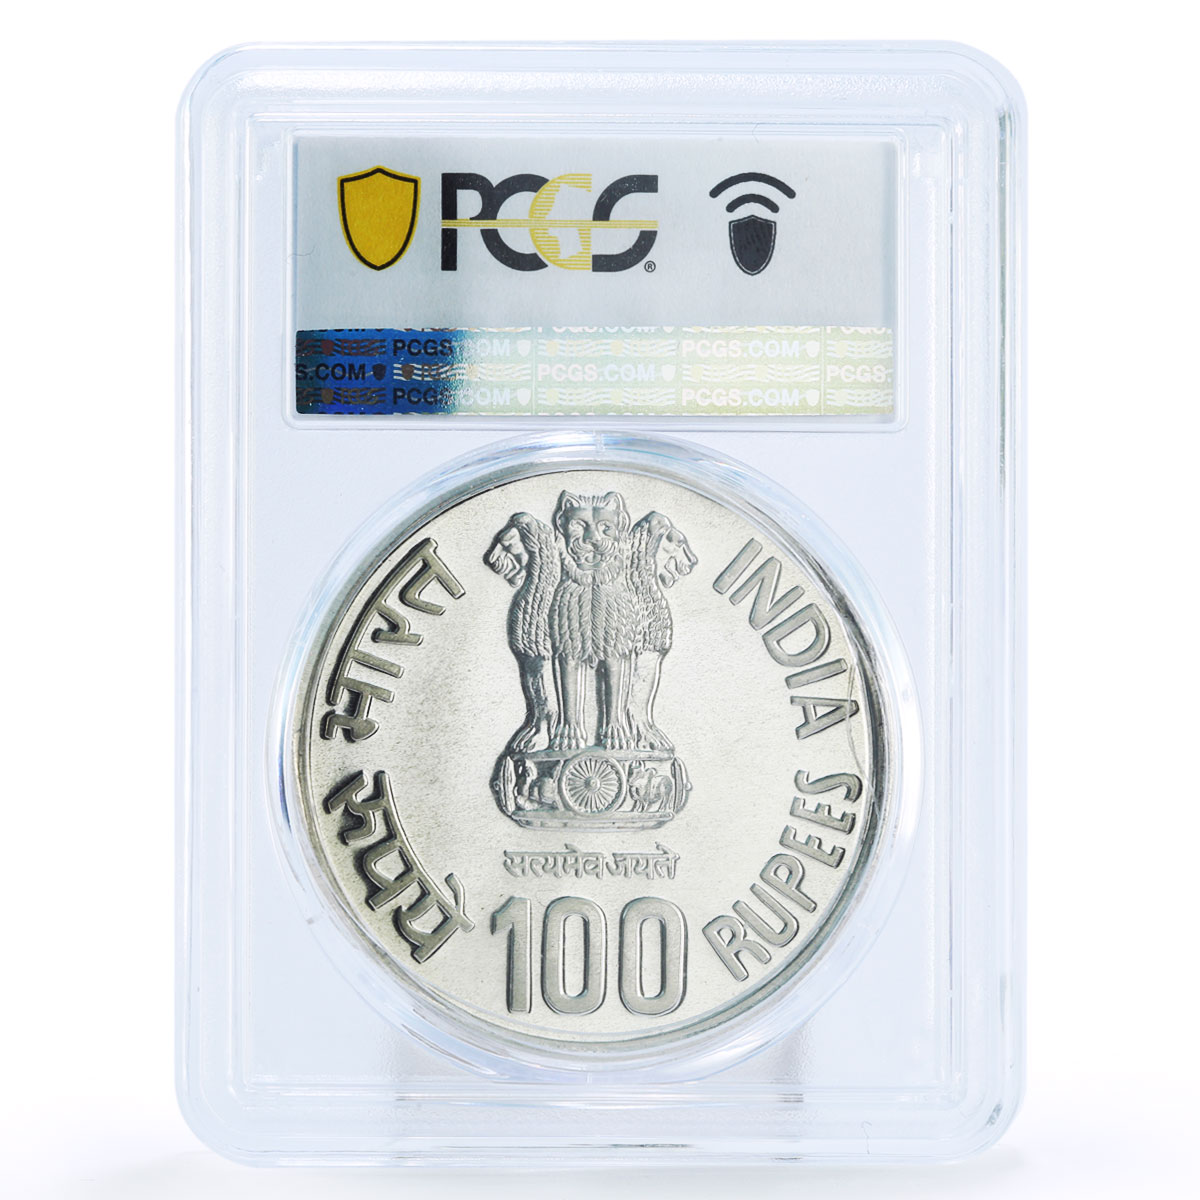 India 100 rupees Jaya Prakash Narayan Politics PL63 PCGS silver coin 2002